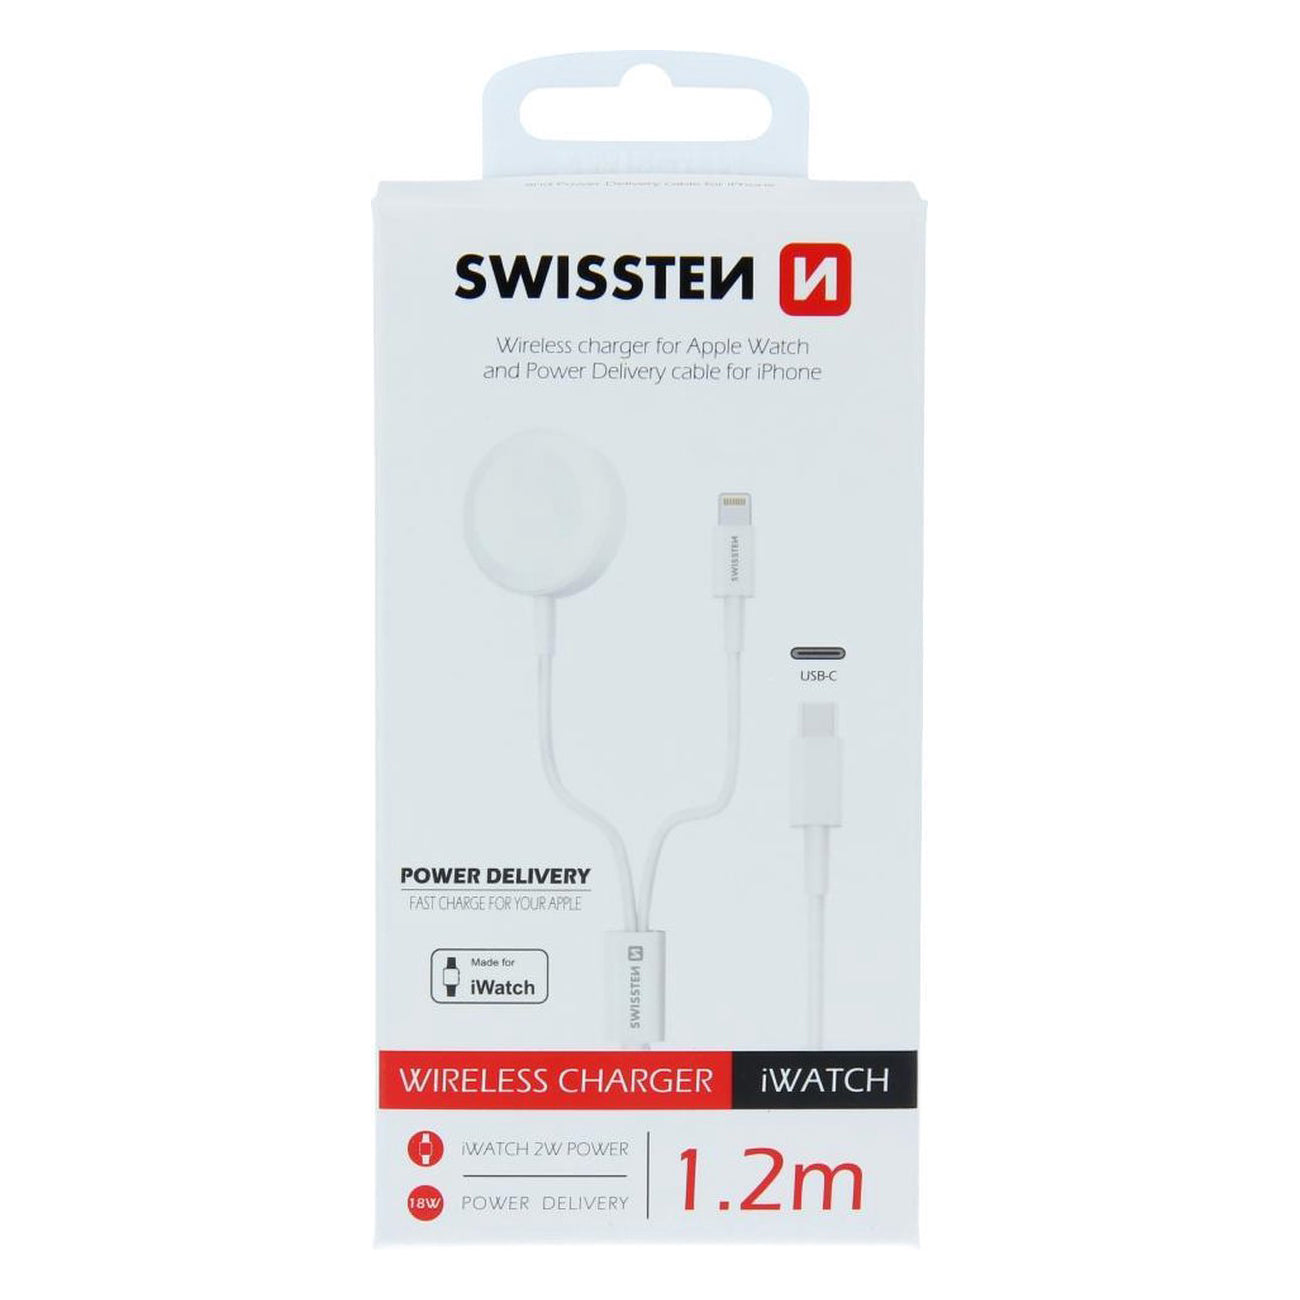 Swissten - Chargeur sans fil pour Apple Watch + PD iPhone